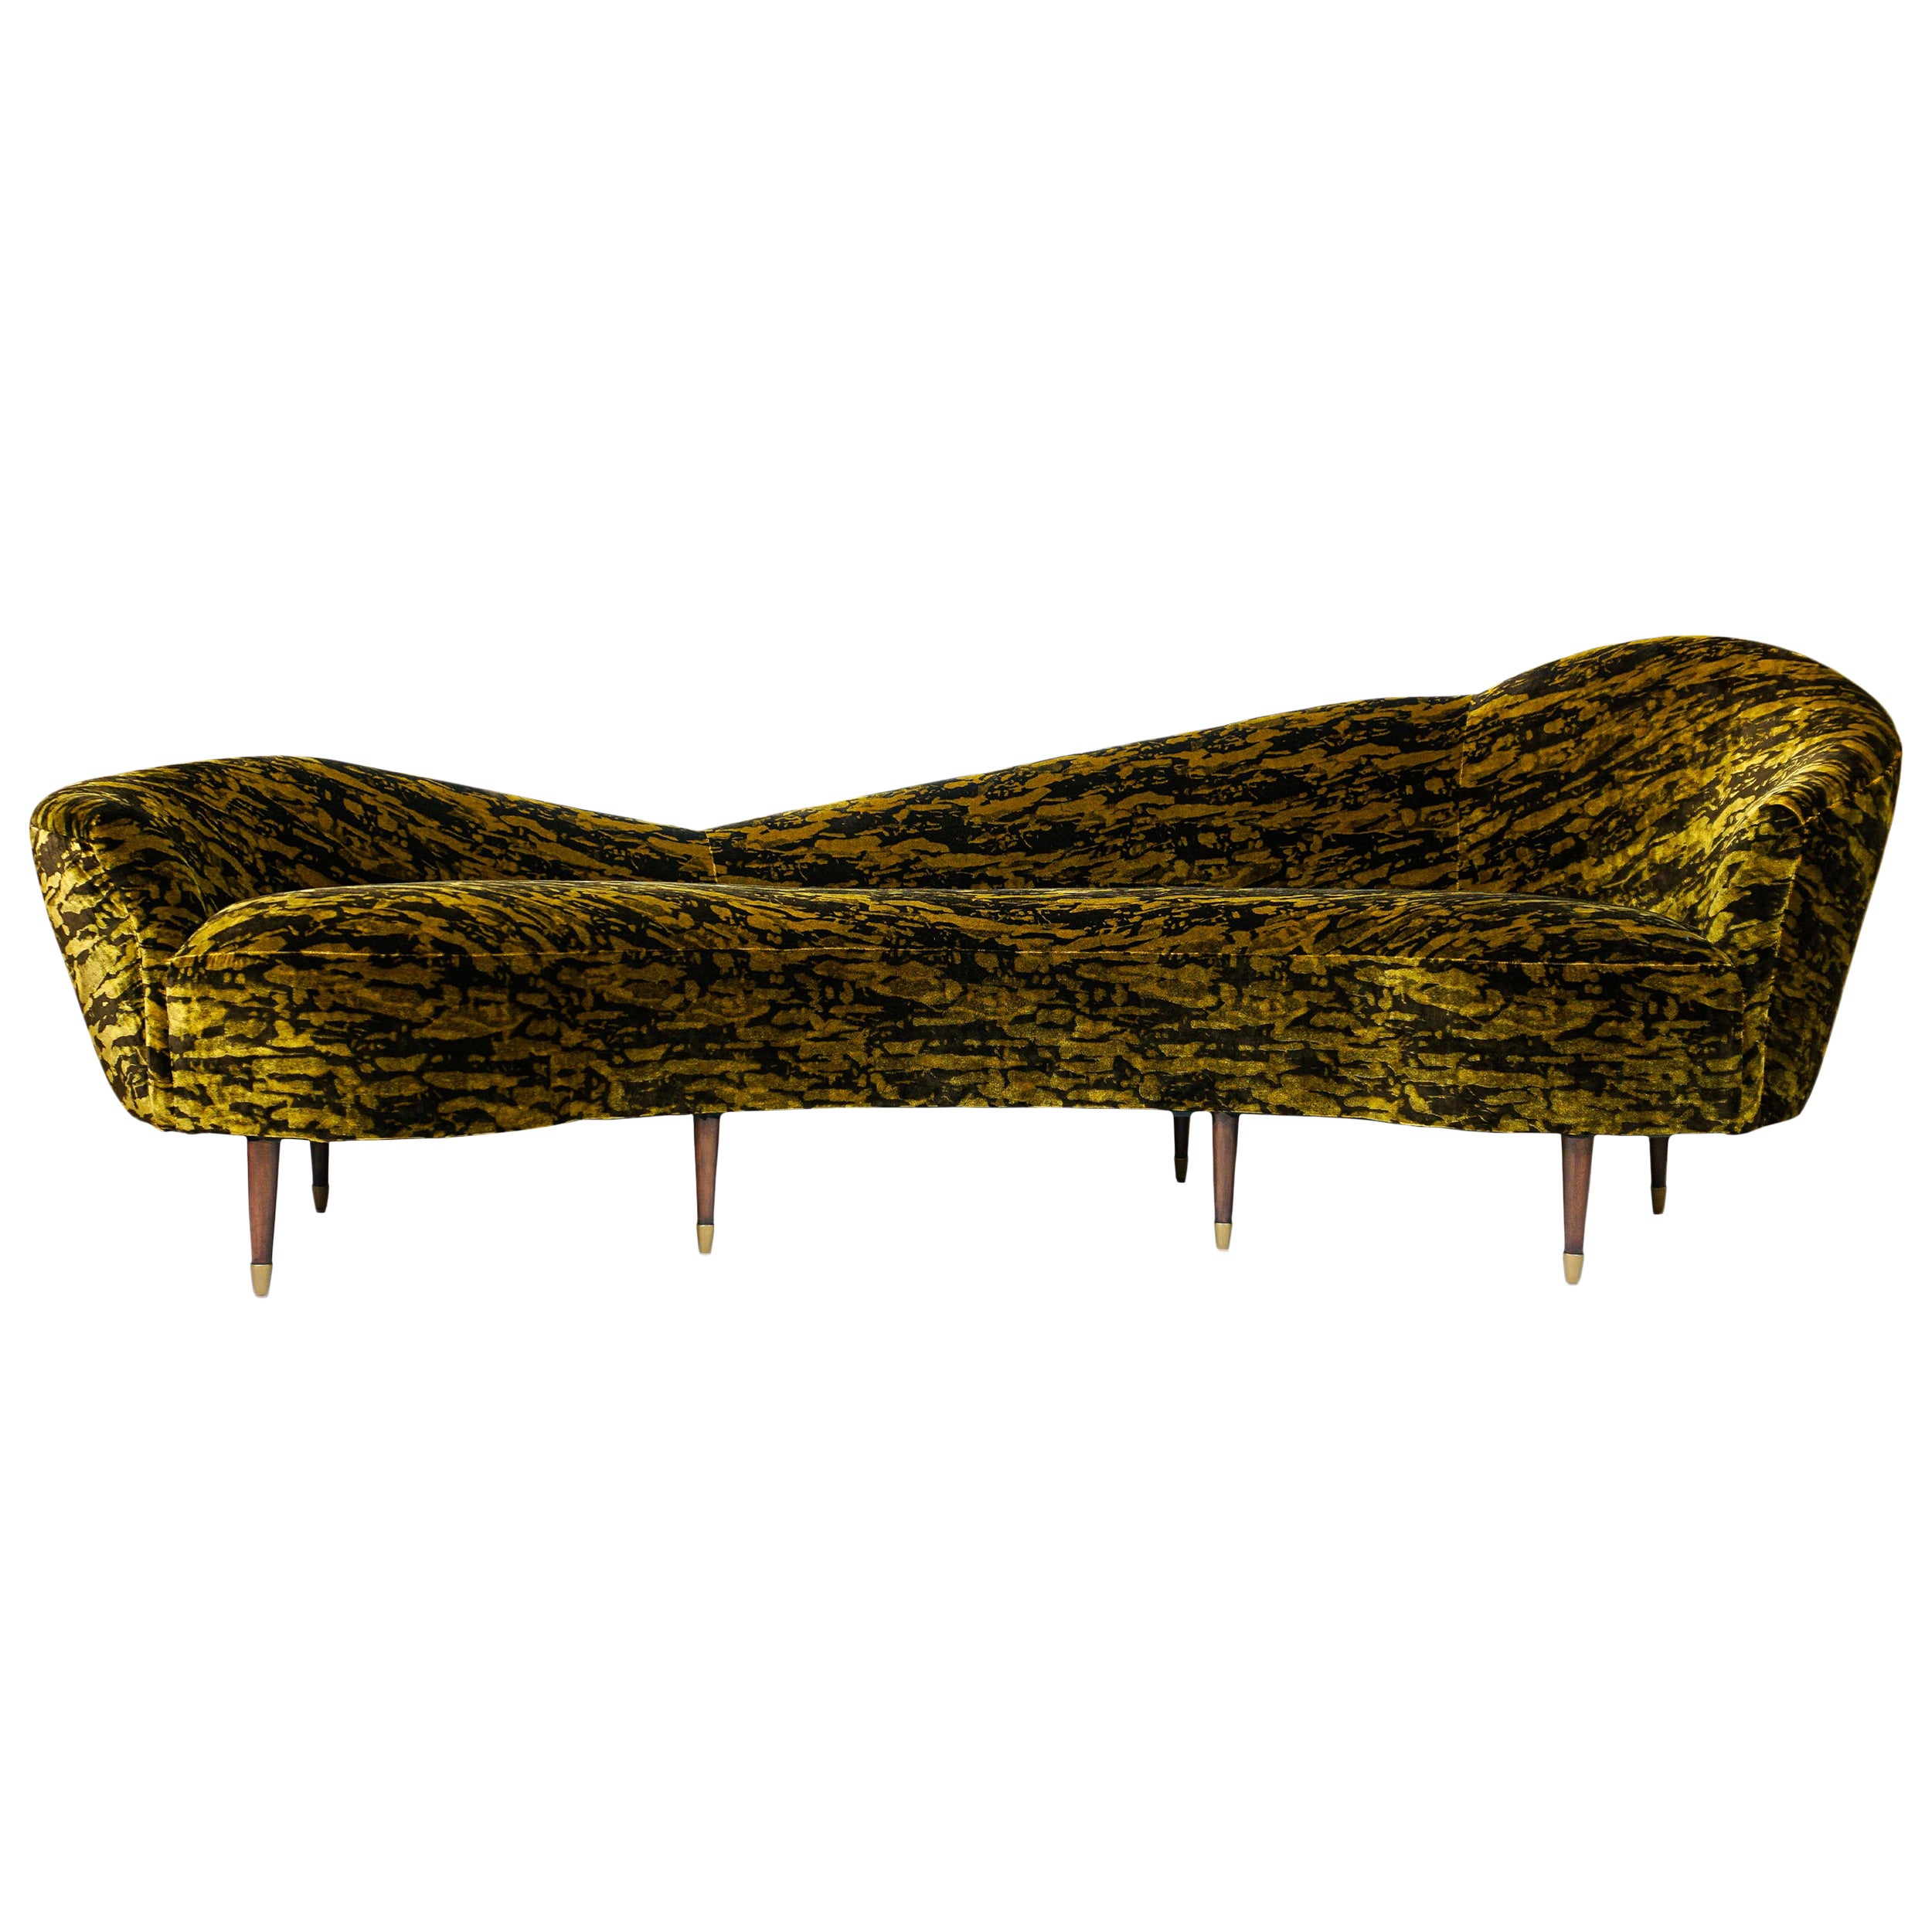 Gold and Brown Velvet Sofa